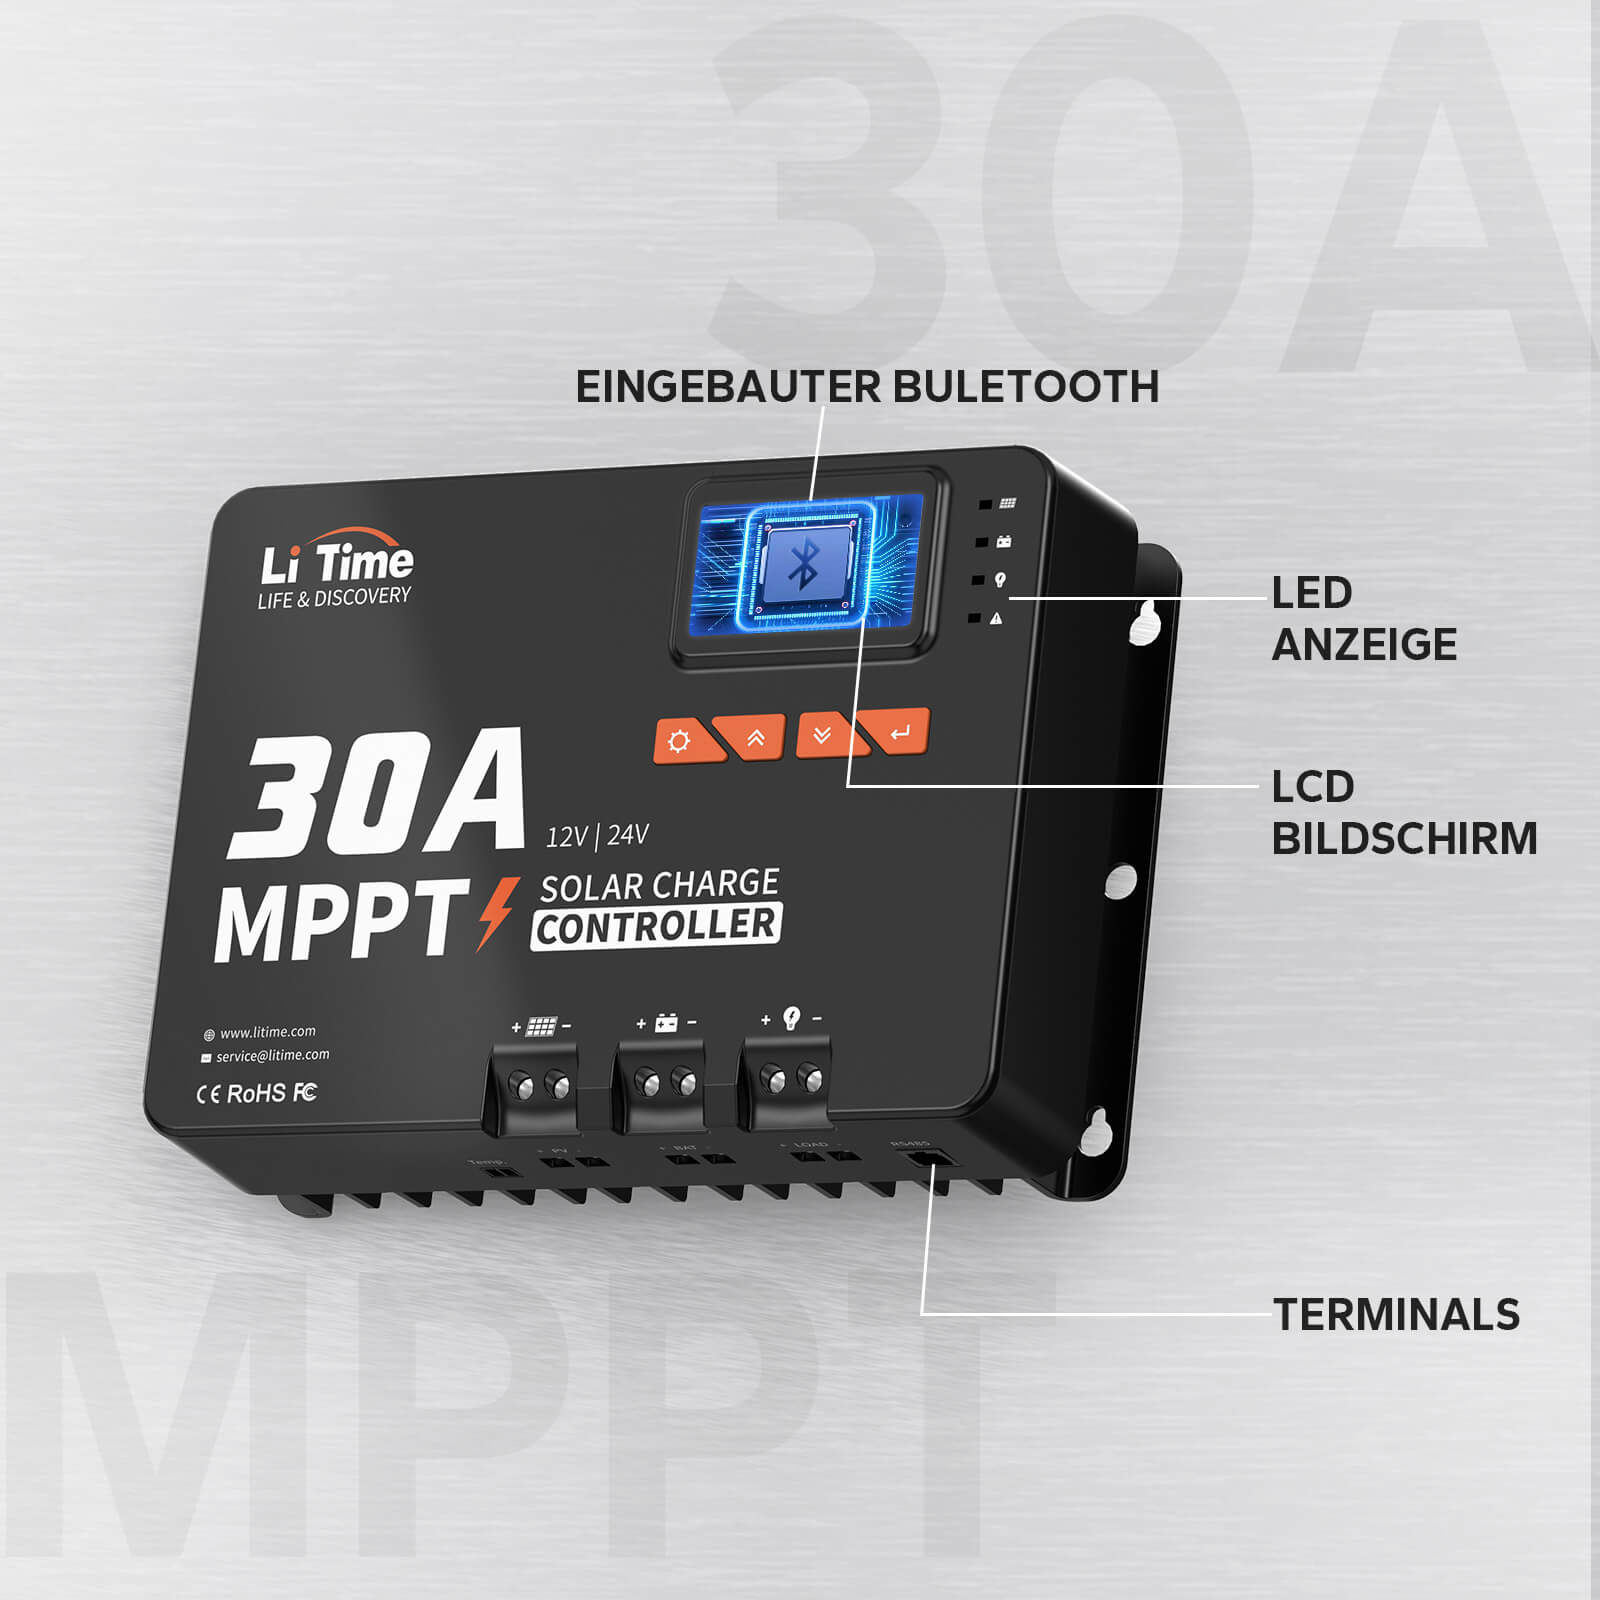 LiTime 30A MPPT 12V/24V Contrôleur de charge solaire à entrée CC automatique avec adaptateur Bluetooth